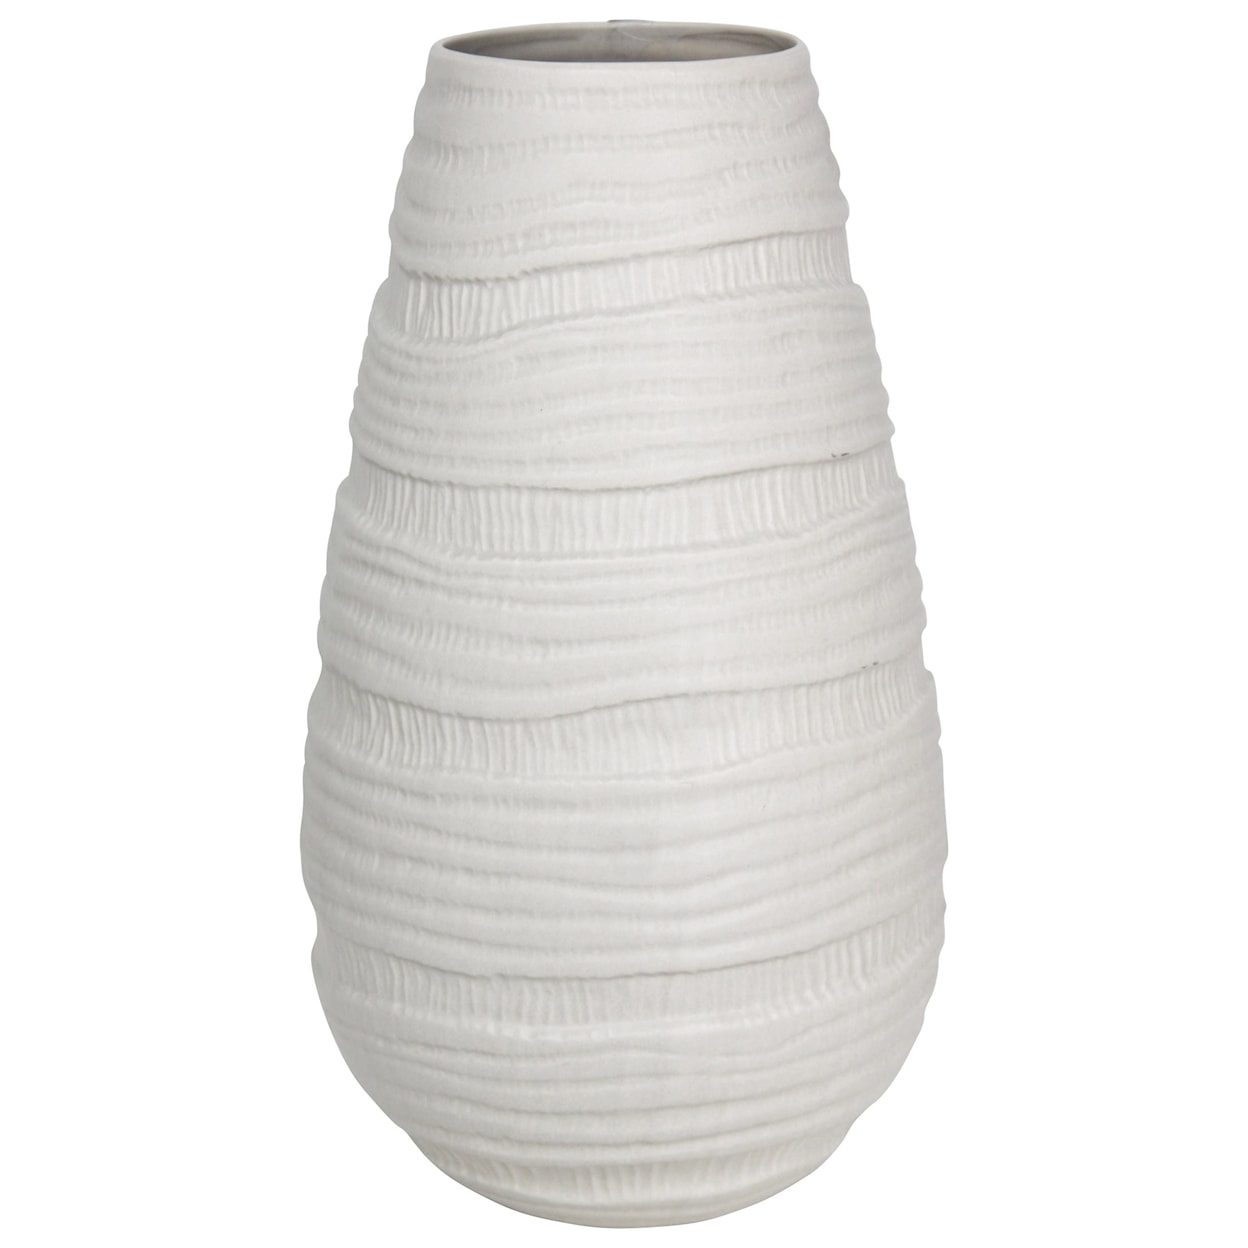 StyleCraft Accessories White Ceramic Vase